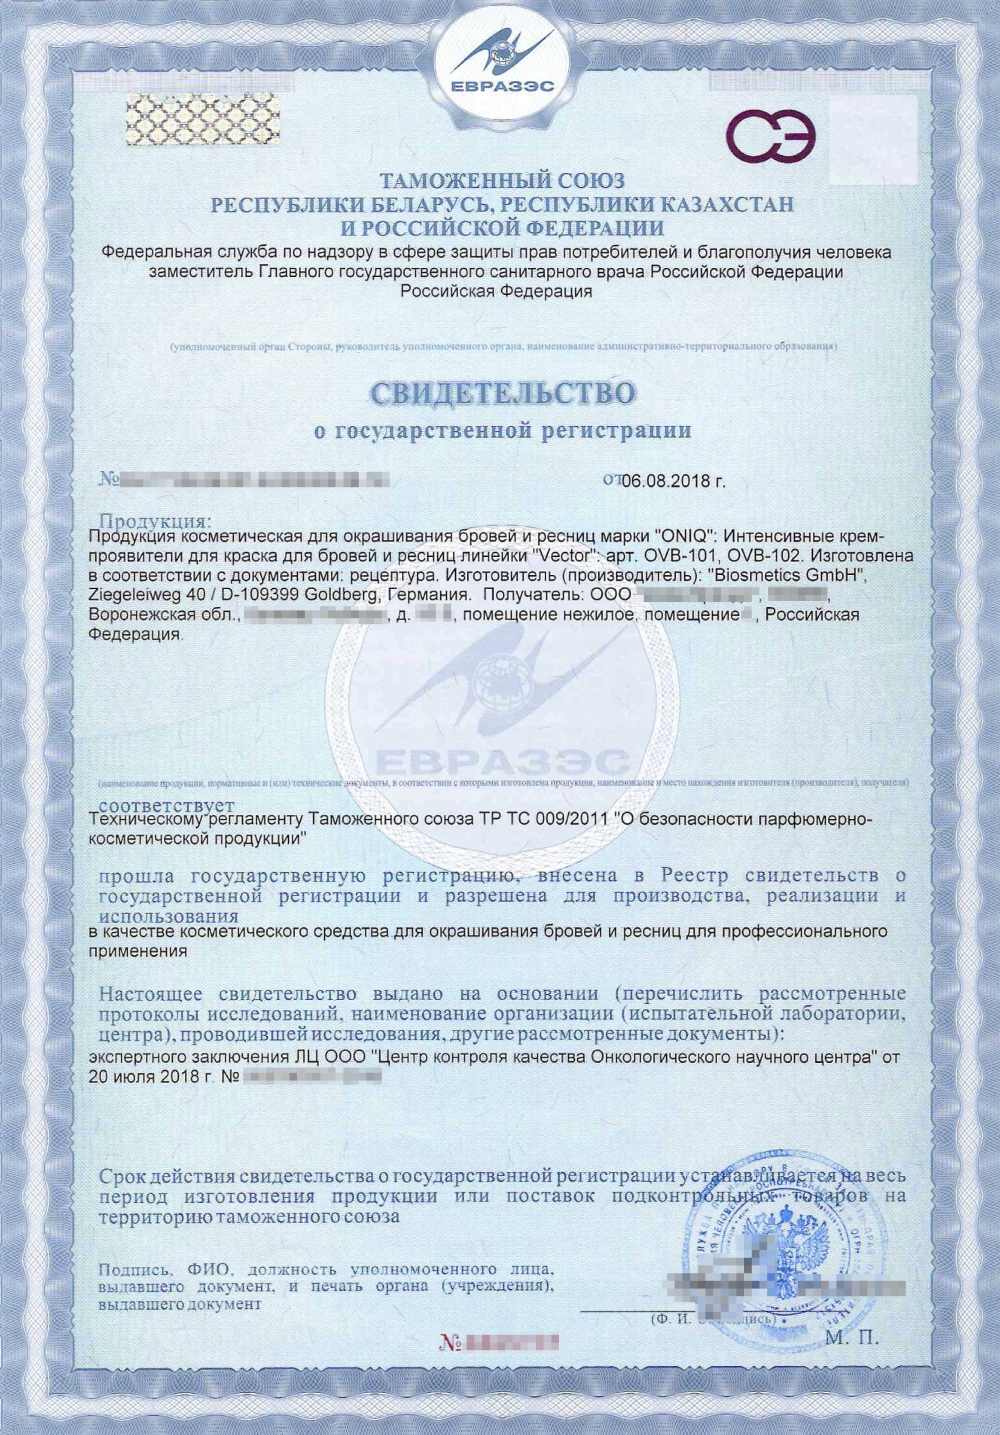 Свидетельство о госрегистрации заполняется на защищенном бланке с уникальным номером, печатью и подписью сотрудника Роспотребнадзора